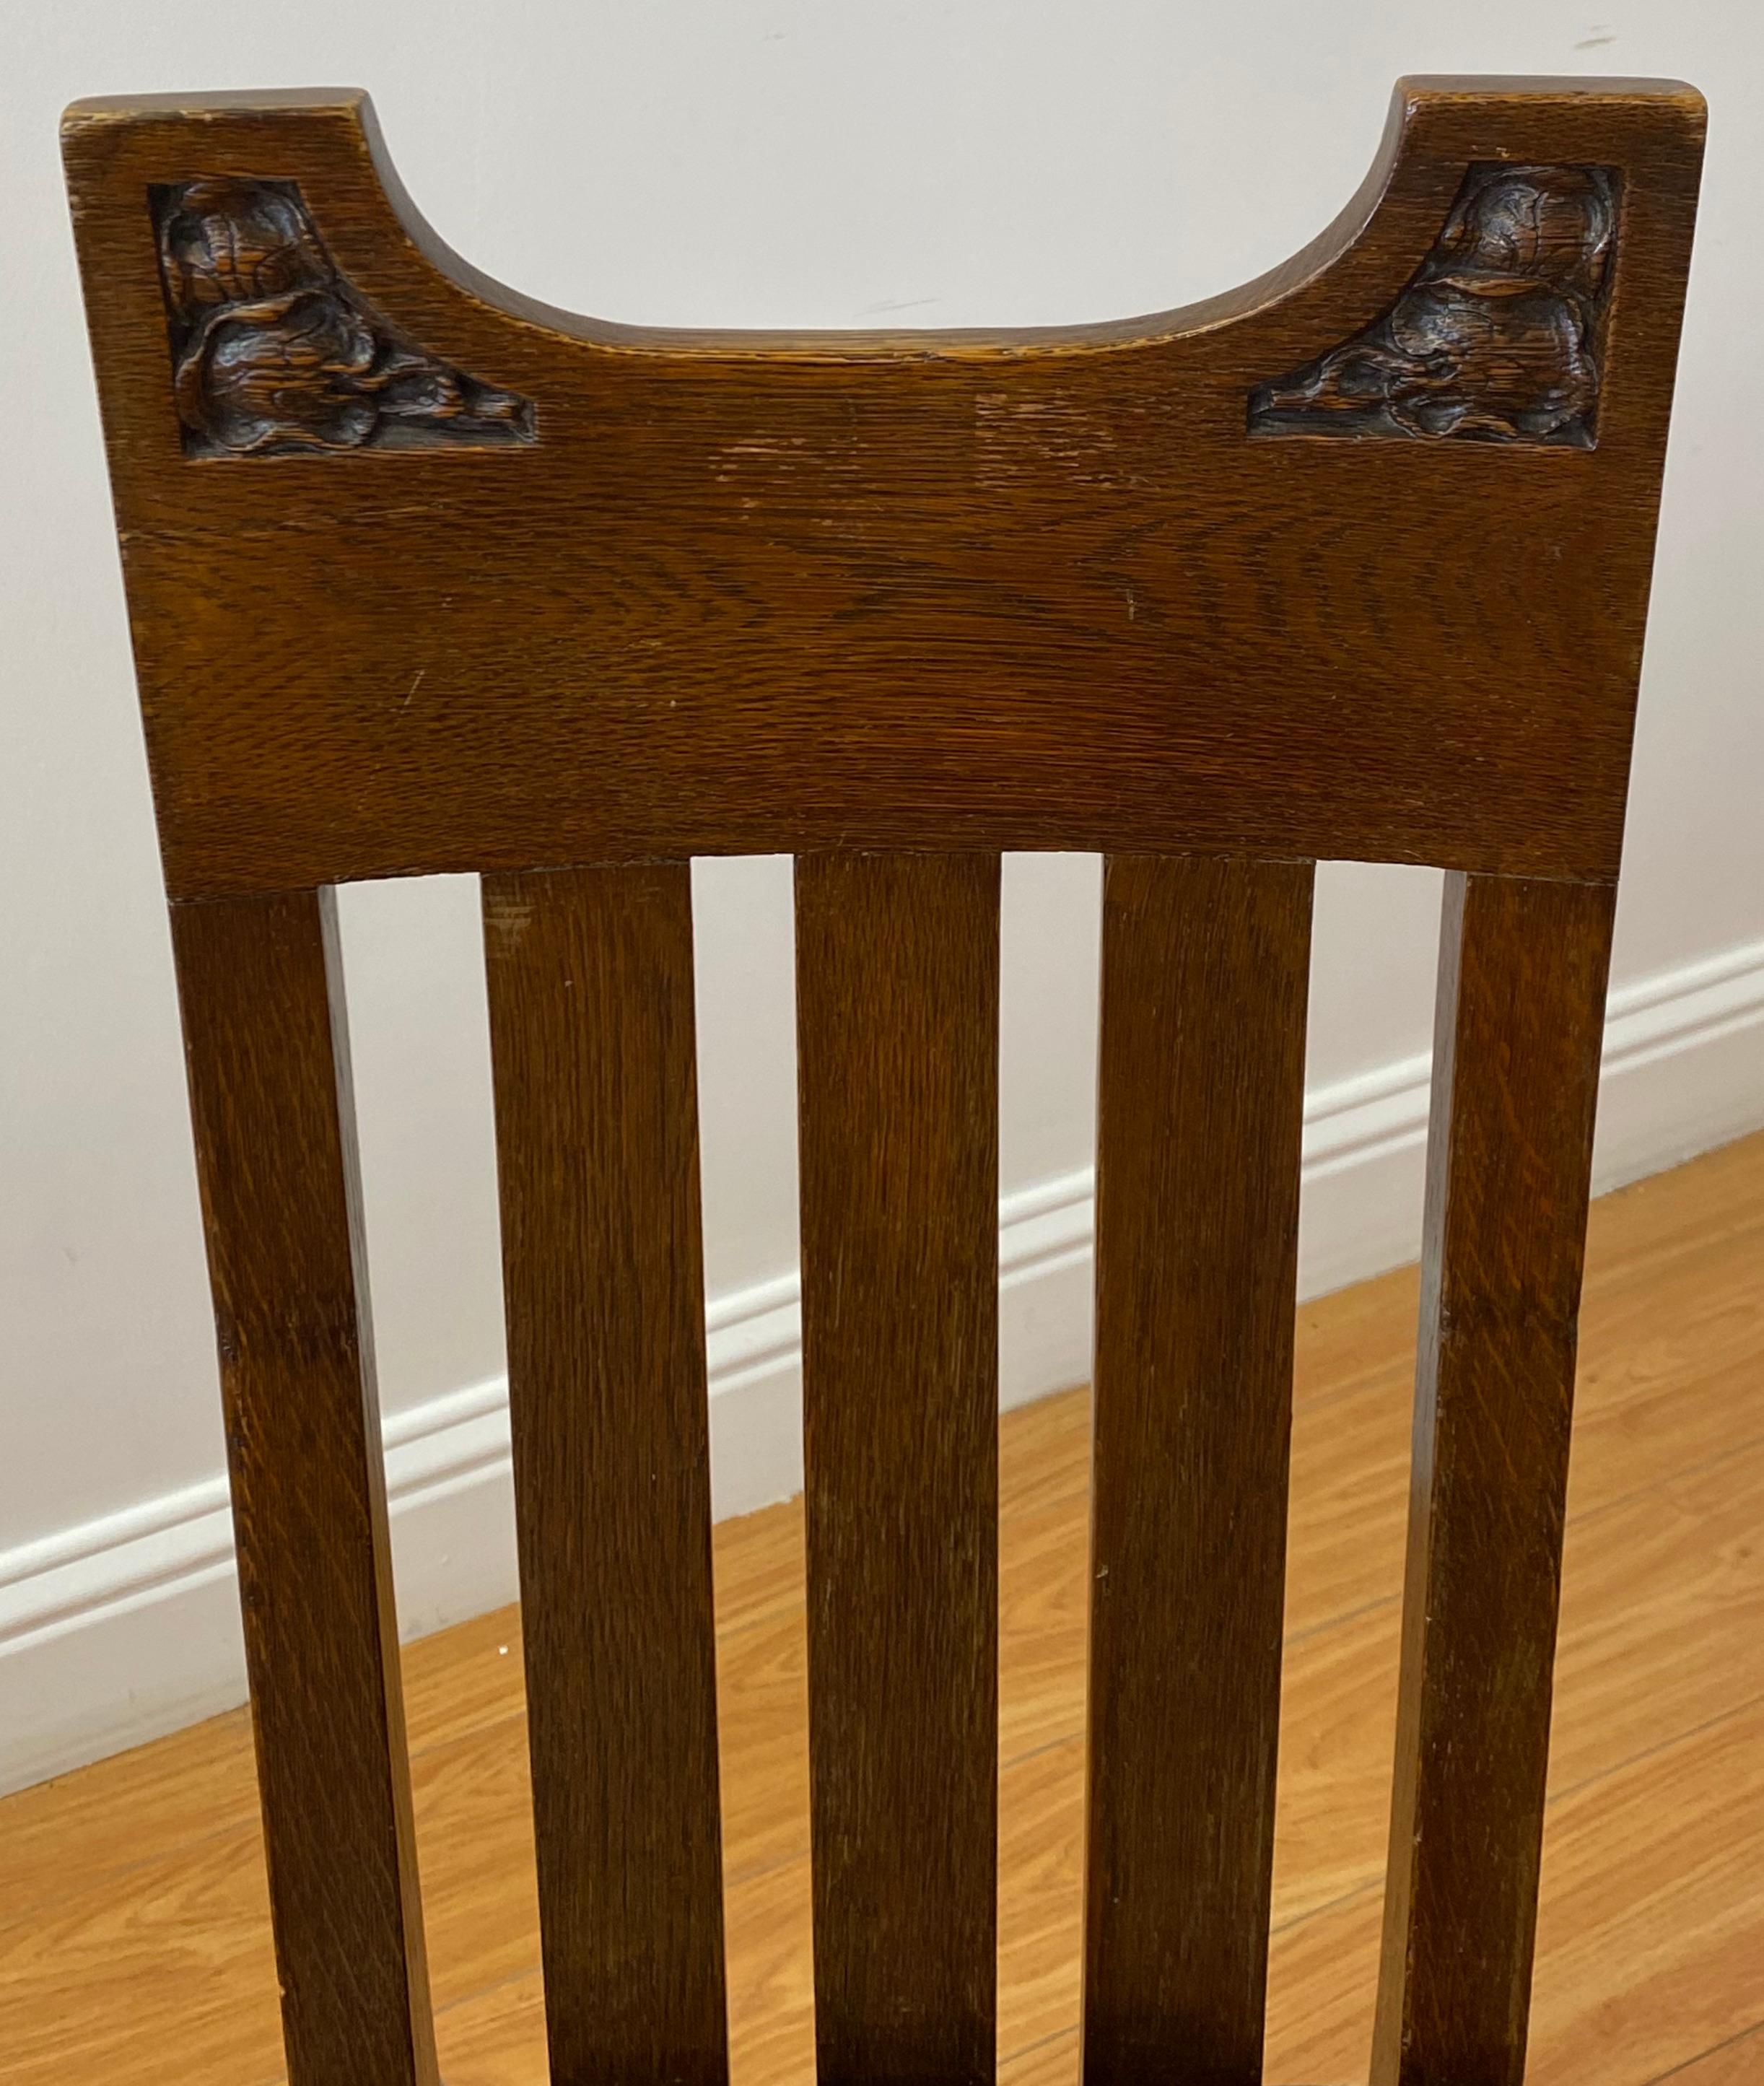 Arts & Crafts Stuhl aus amerikanischer Eiche, um 1920

Handgeschnitzt - Maßanfertigung - Lederpolsterung

Maße: 19